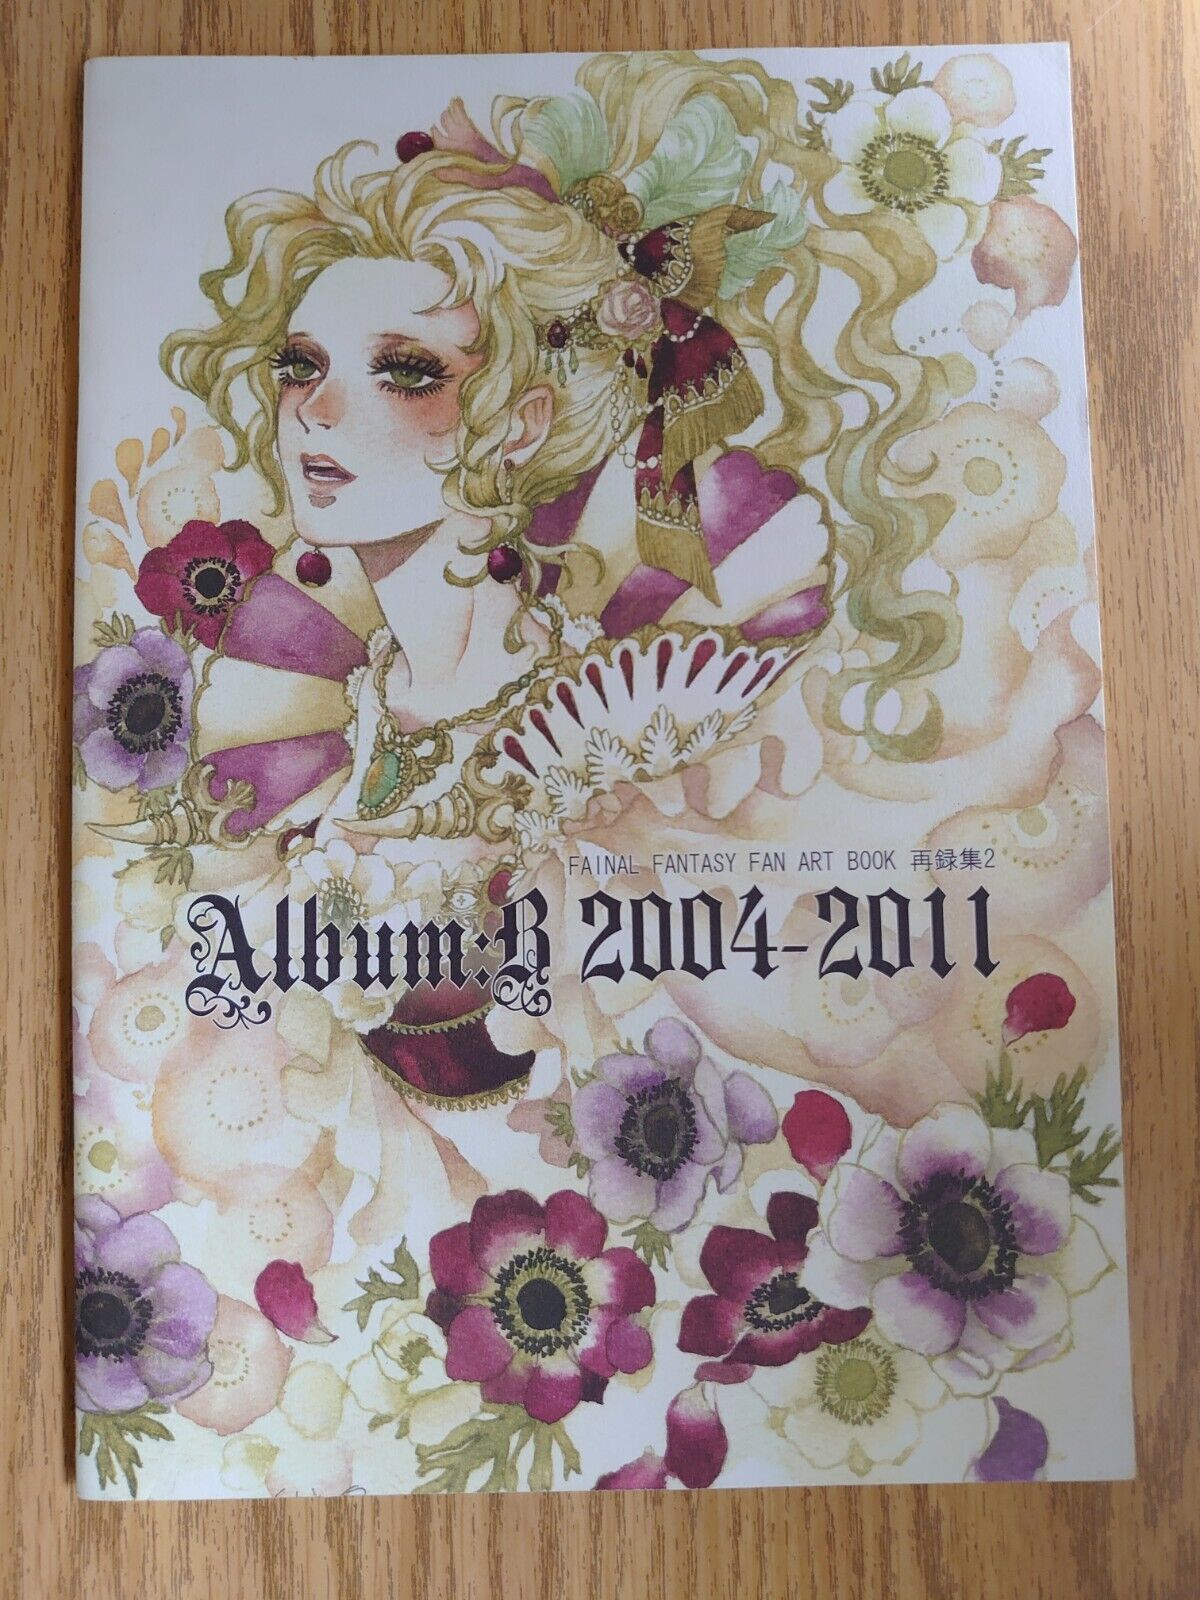 Final Fantasy VI IV FF6 FF4 Sakizo Doujinshi Album:B 2004-2011